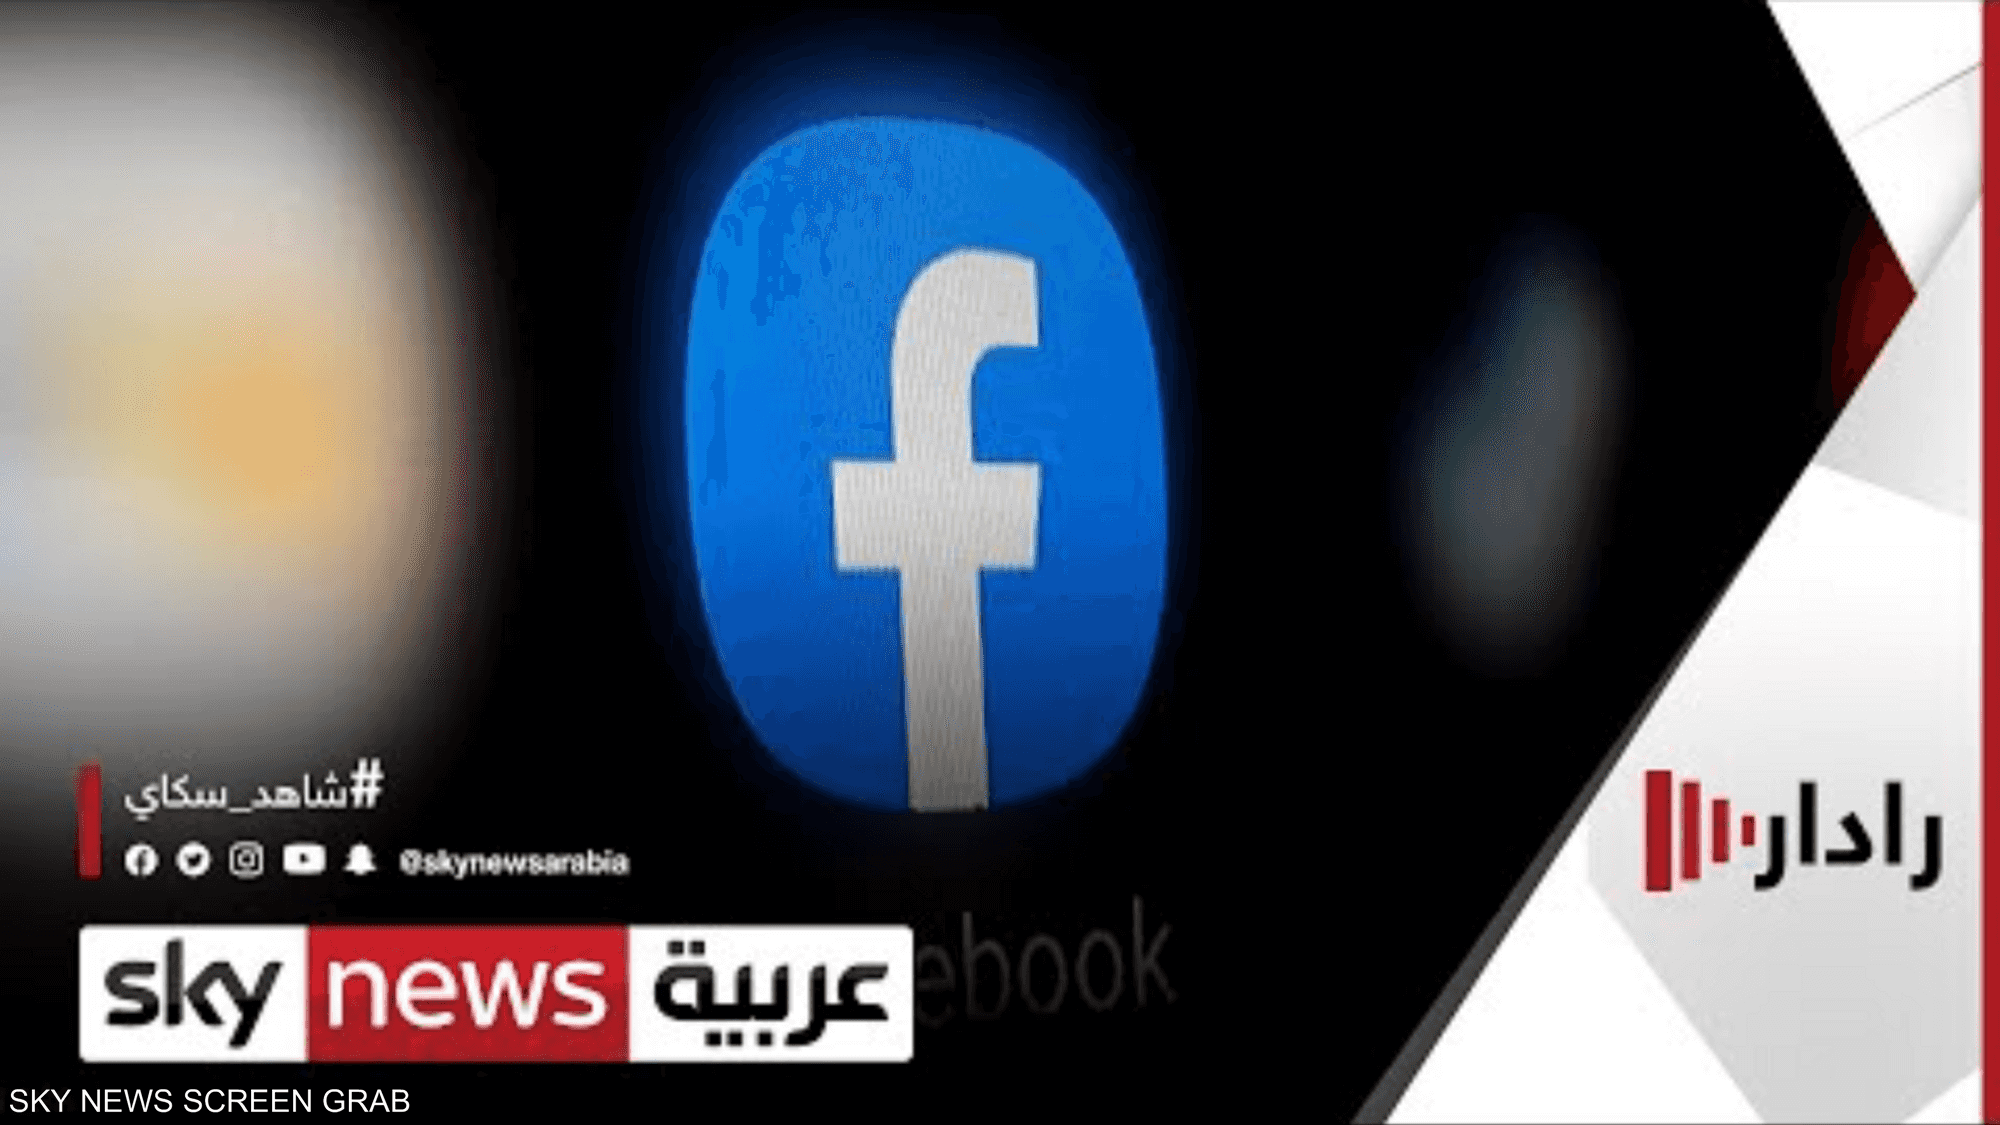 فيسبوك ينشئ مركزا لمنشورات الصراع الفلسطيني الإسرائيلي